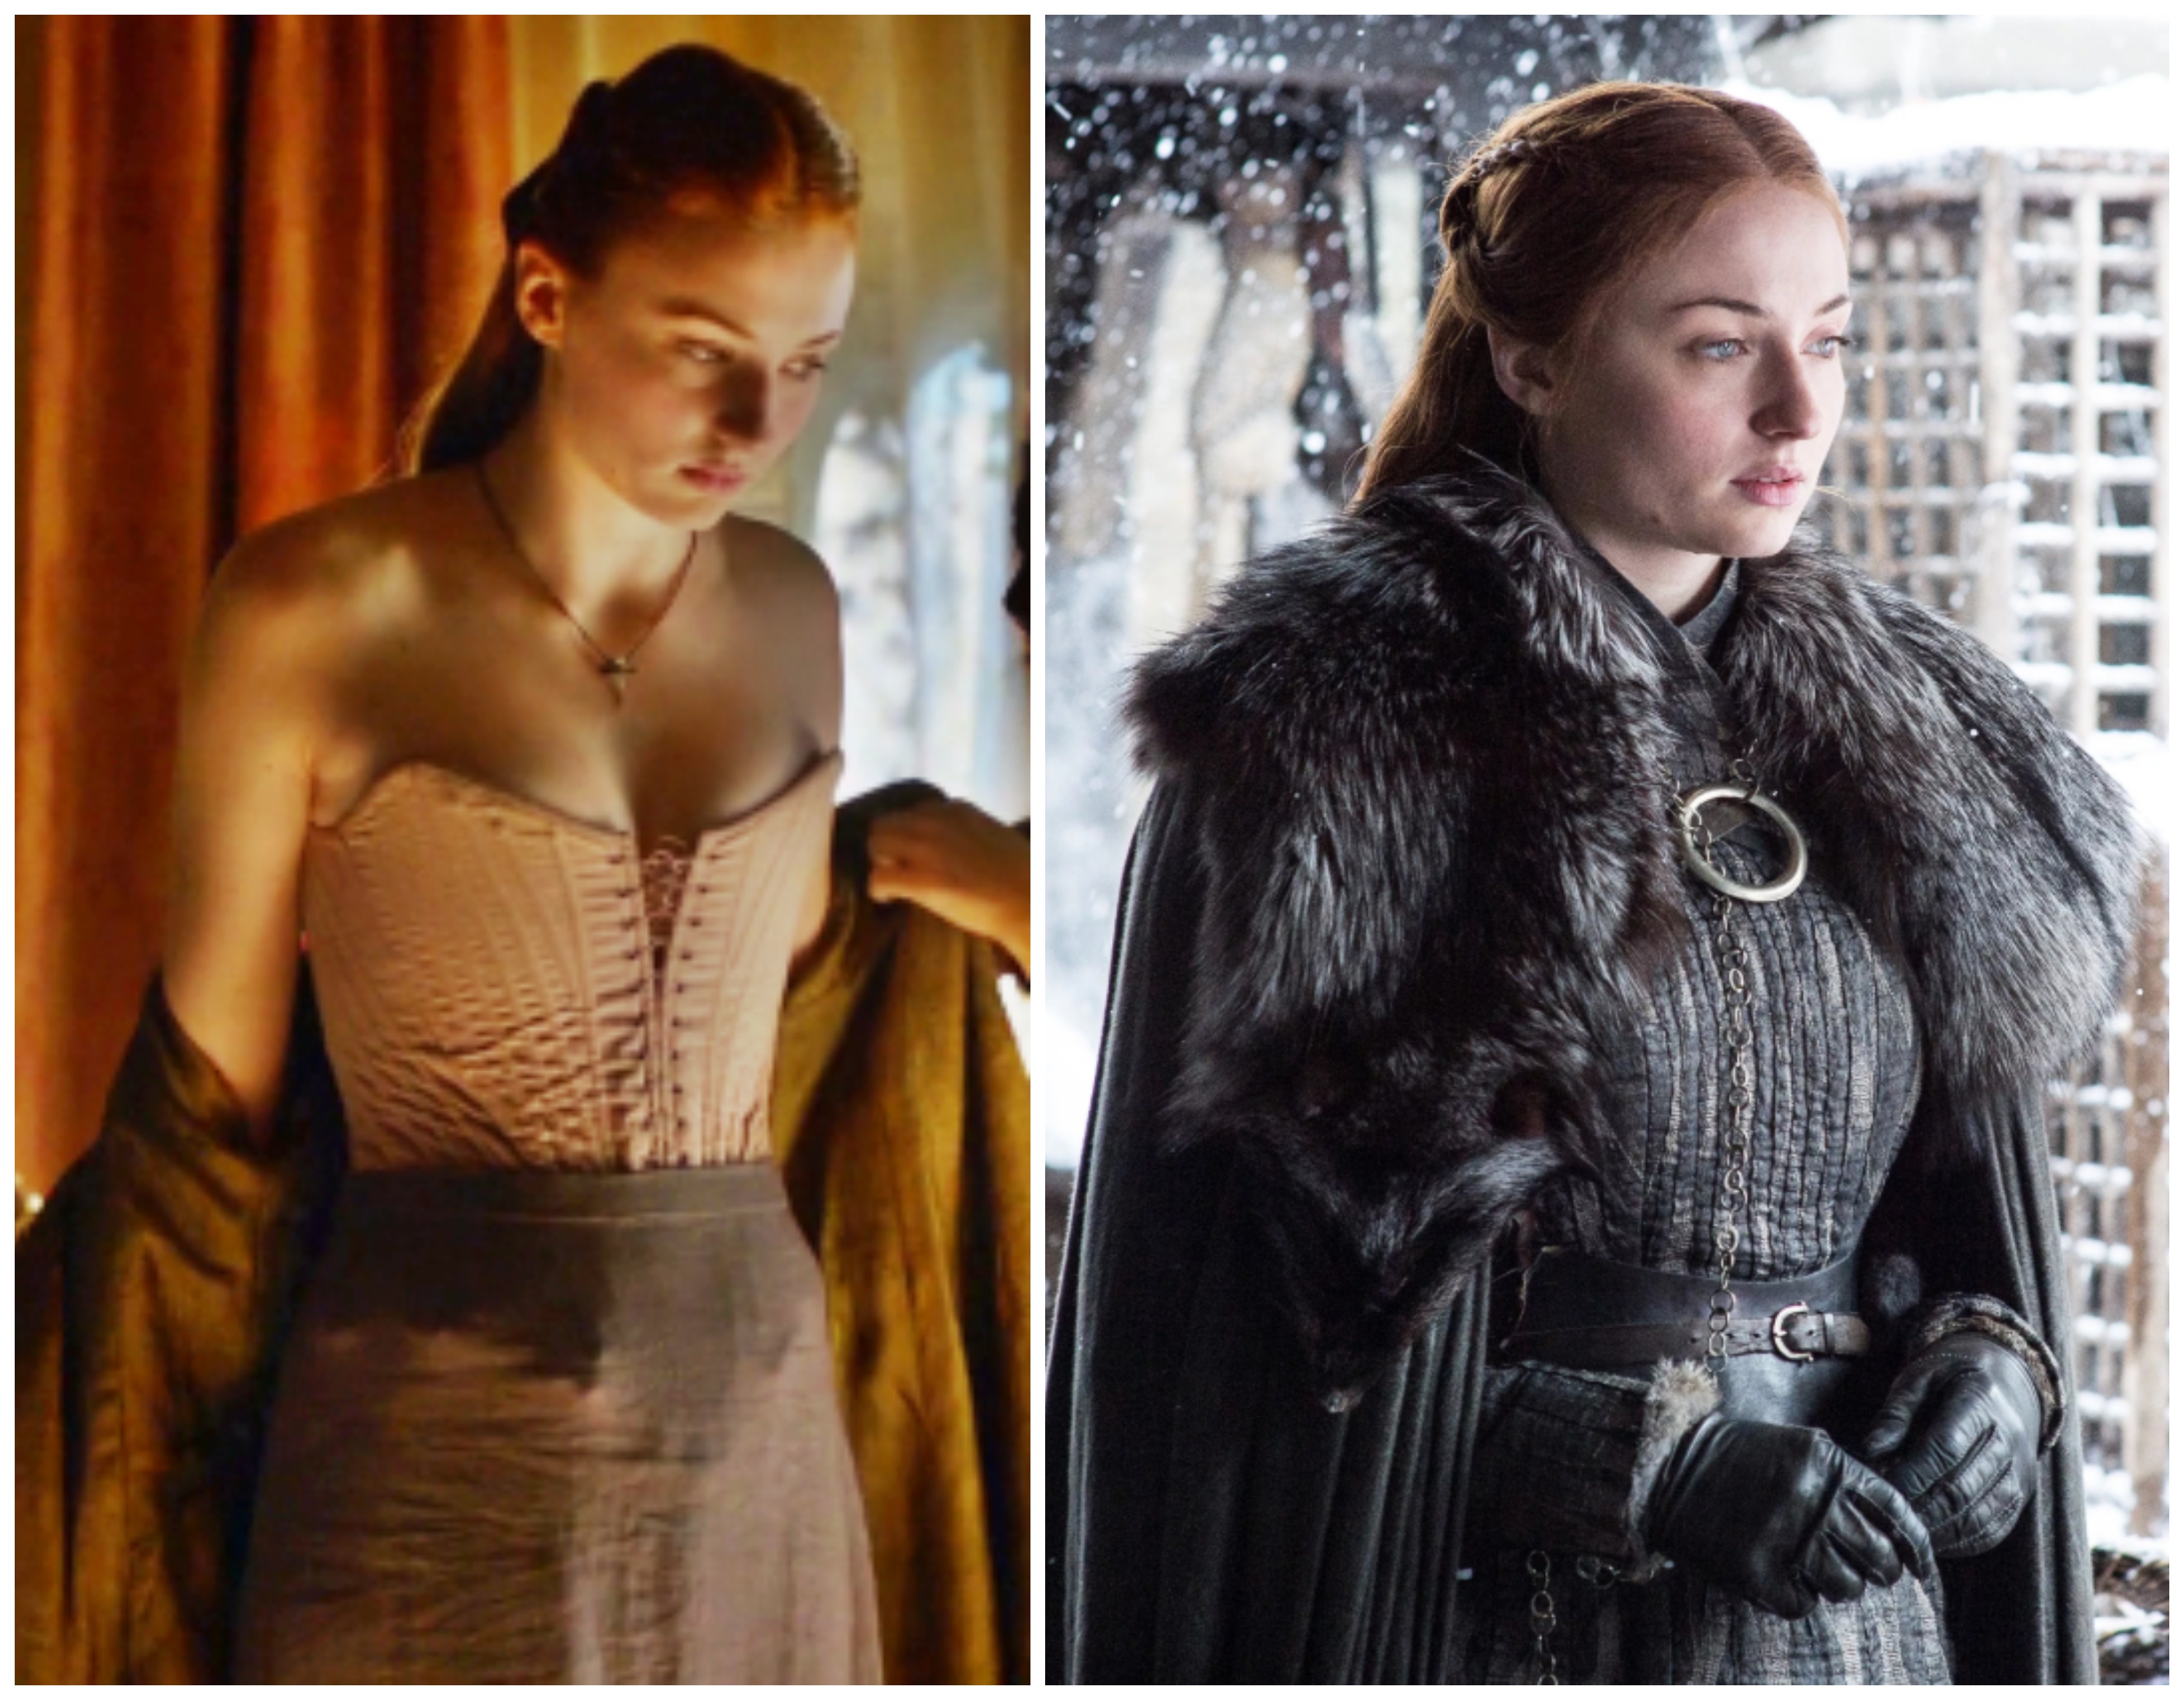 A sorozat végére aztán megtalálta Sansa is a saját, királynői stílusát. Sophie Turner színésznő kedvenc darabja, amibe beleszeretett a forgatáson, érdekes módon egy fűző volt - ő ezt vitte haza emlékül. Amit viszont nagyon utált, az a hatalmas szőrmés köpeny, amit a sorozat végefelé ‘vonszolt maga után‘. 